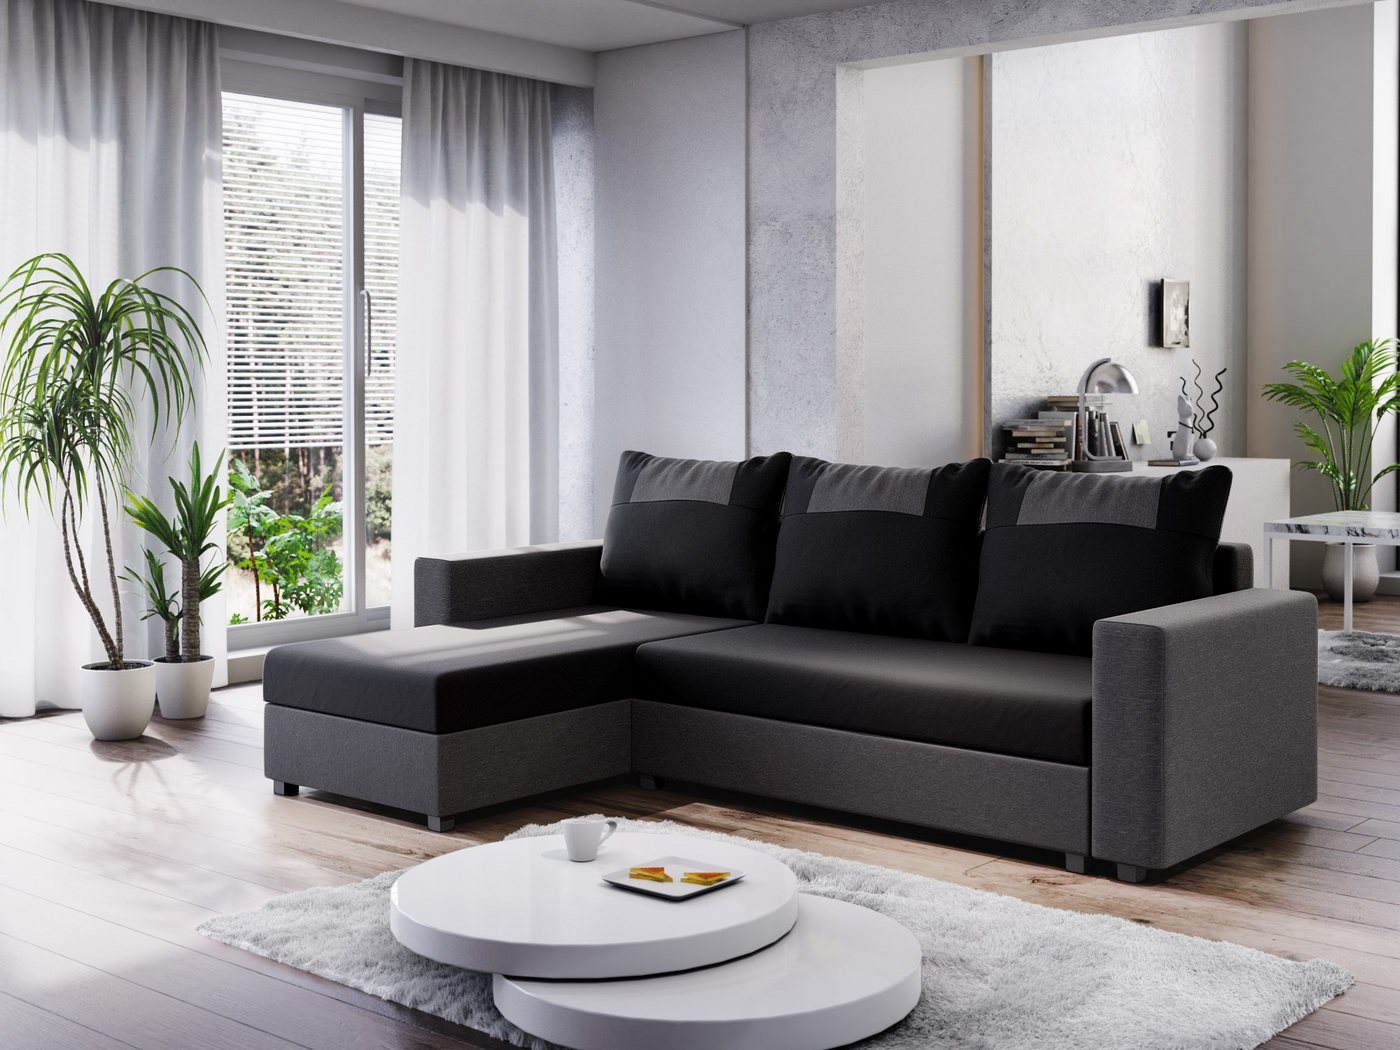 ALTDECOR Ecksofa STARI-BIS, Couch mit Schlaffunktion, Wohnzimmer - Wohnland günstig online kaufen